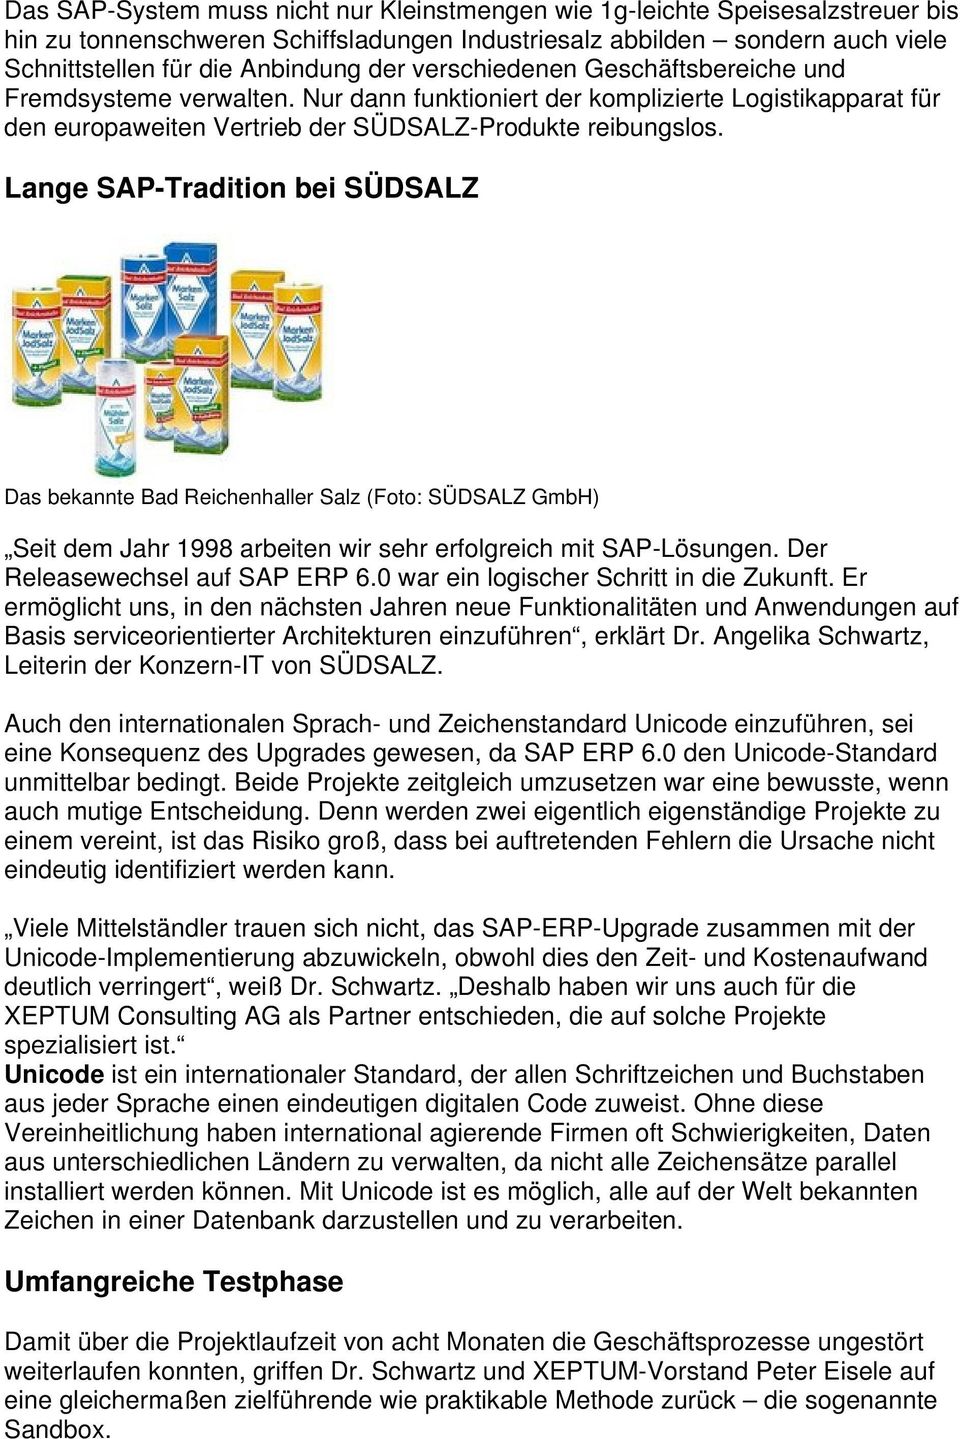 Lange SAP-Tradition bei SÜDSALZ Das bekannte Bad Reichenhaller Salz (Foto: SÜDSALZ GmbH) Seit dem Jahr 1998 arbeiten wir sehr erfolgreich mit SAP-Lösungen. Der Releasewechsel auf SAP ERP 6.